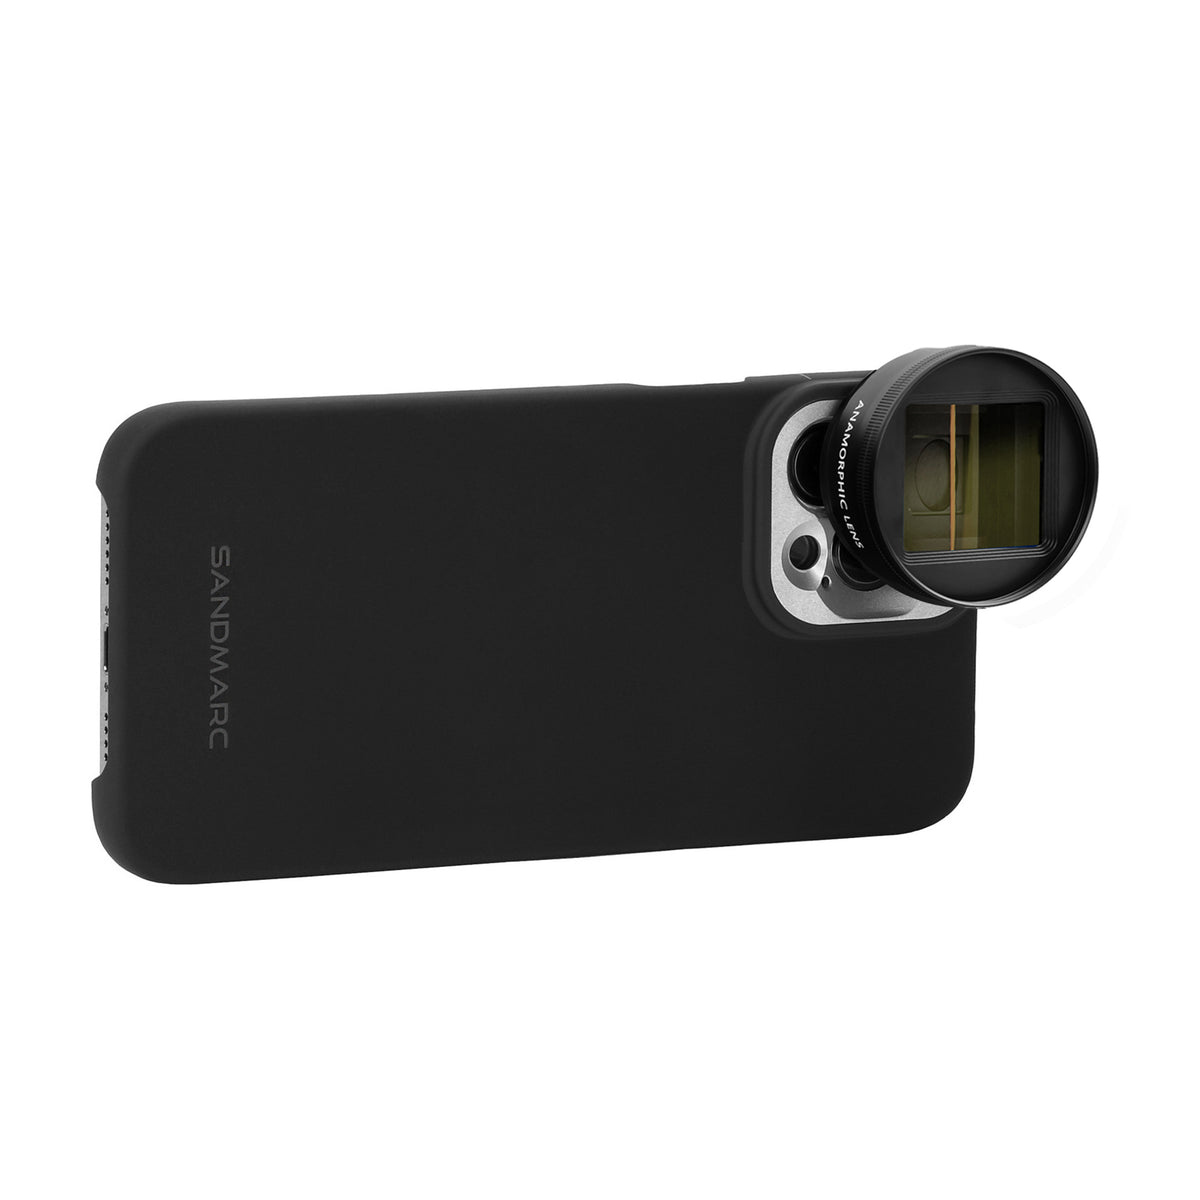 Anamorphic Lens Edition - iPhone 12 Pro - SANDMARC #type_anamorphic 1.33x